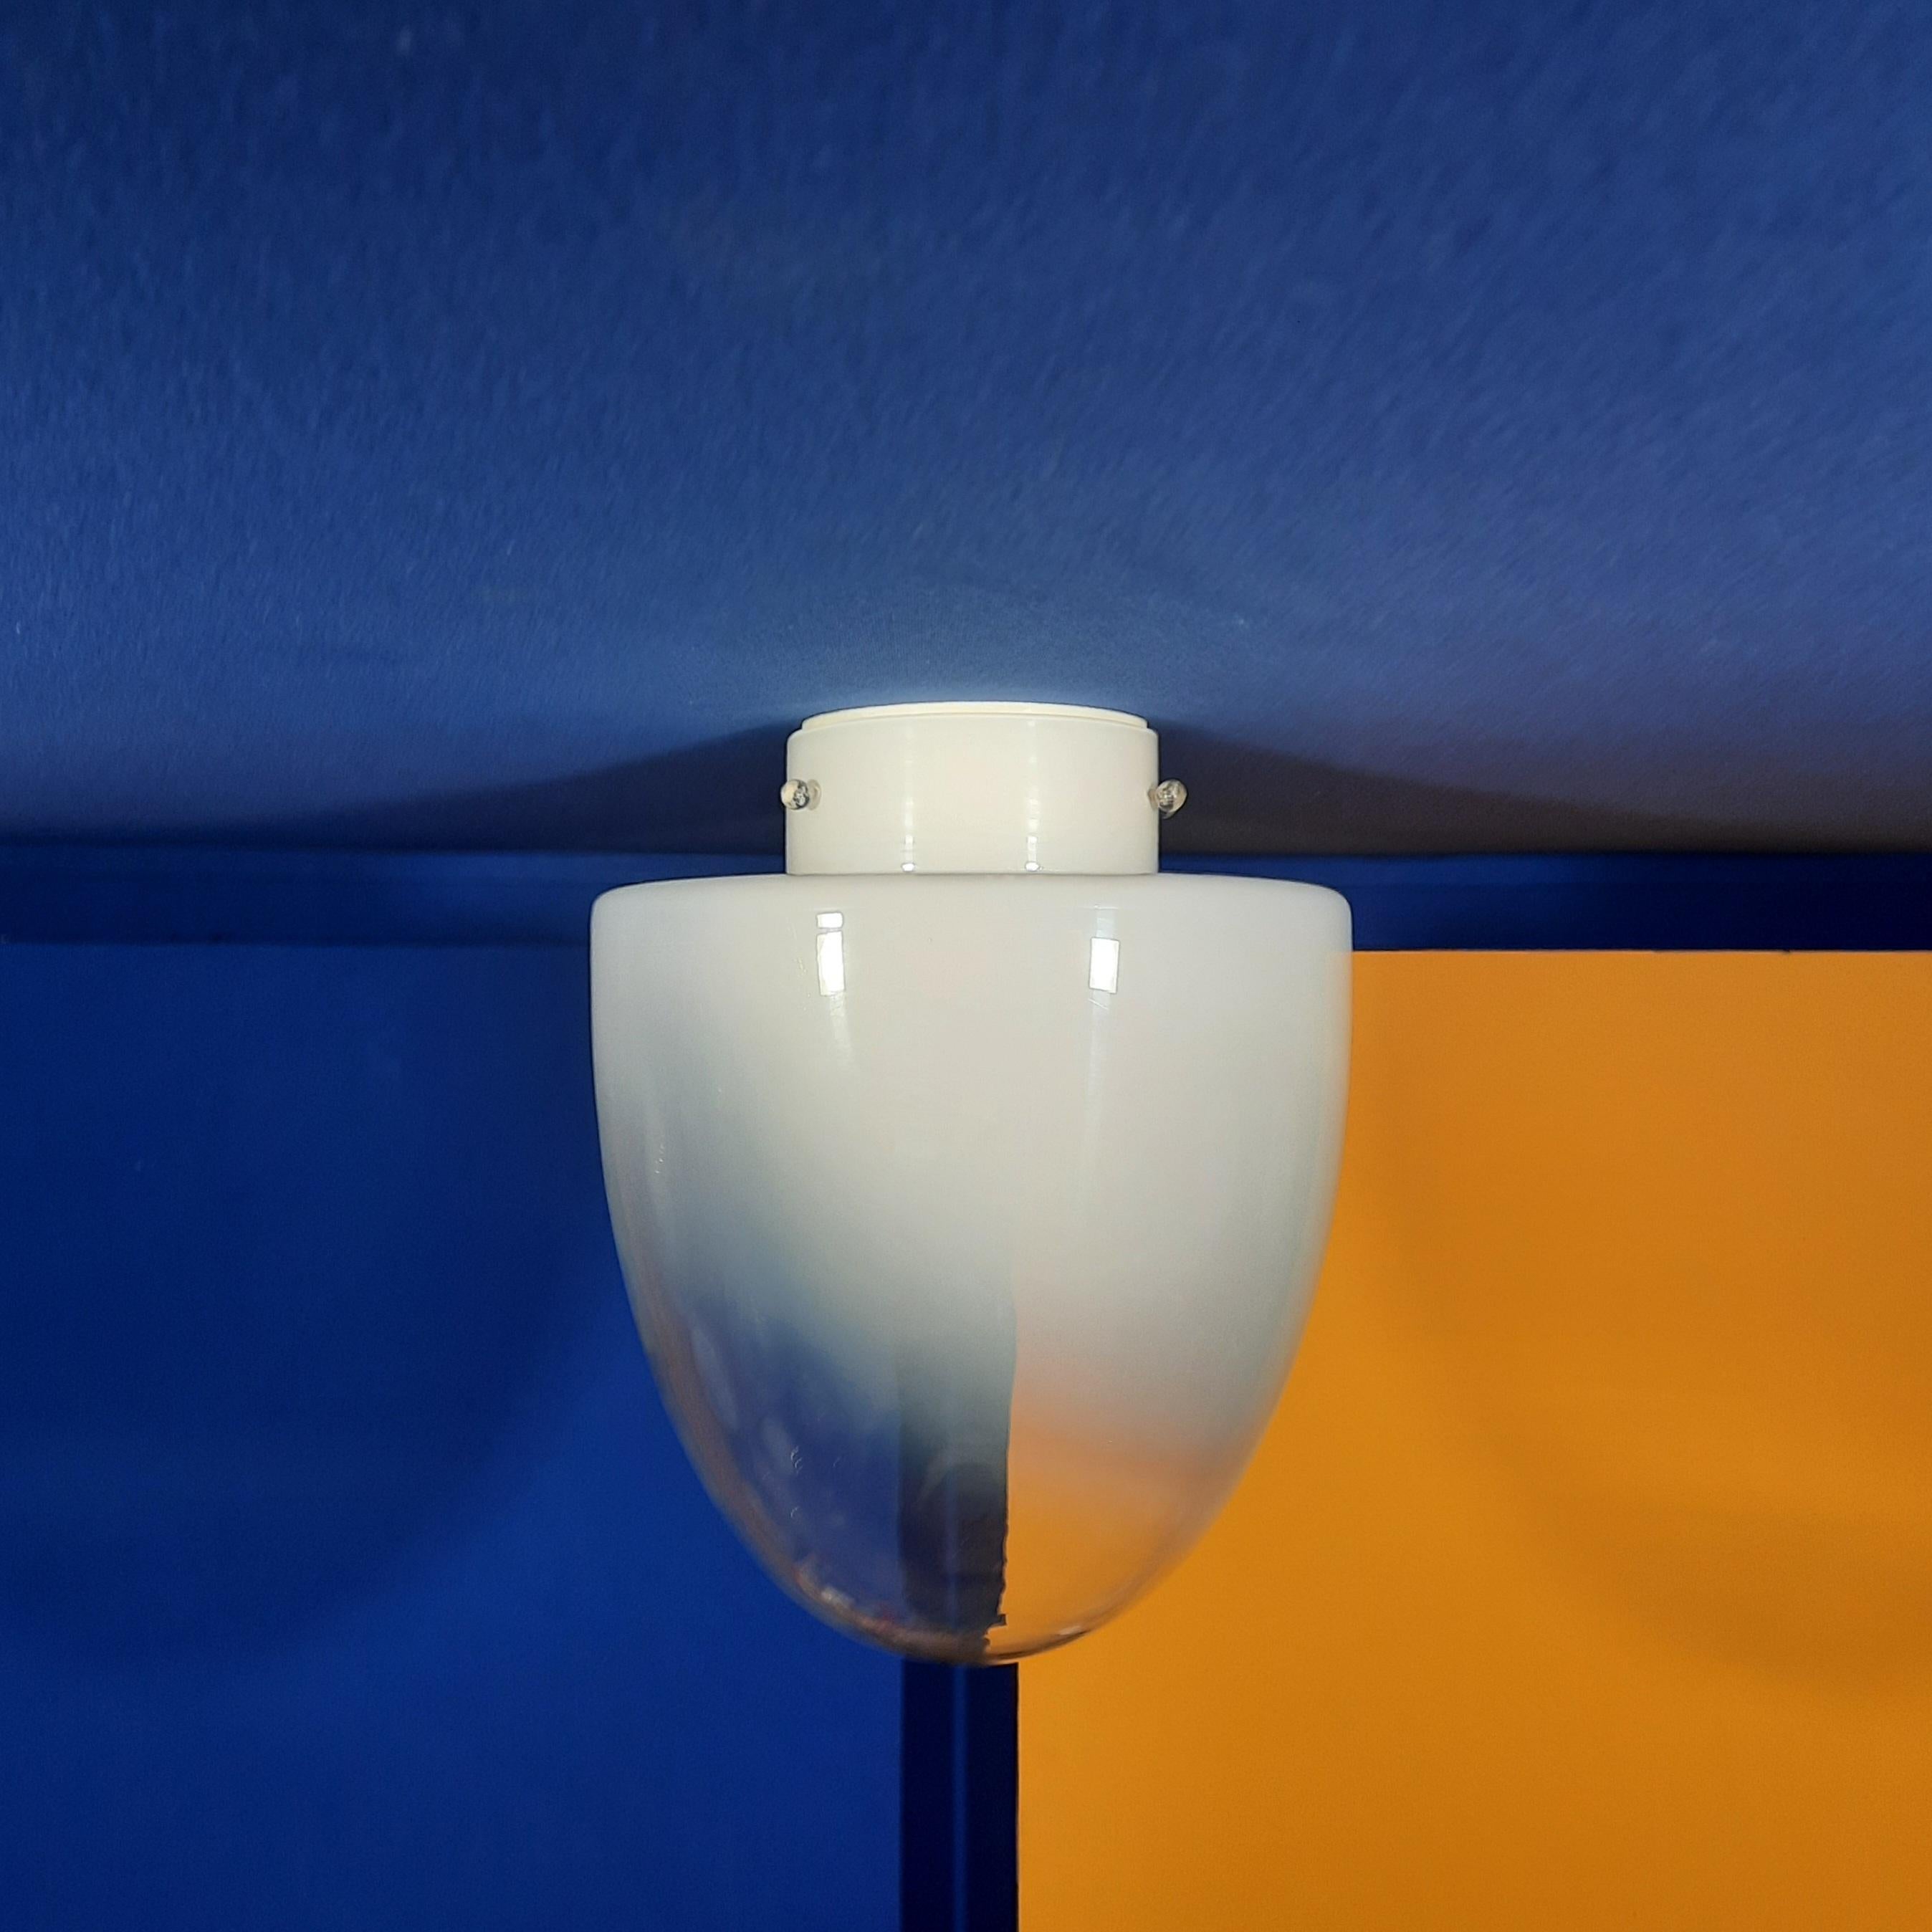 Das Modell Ebe ist eine wand- und deckenbündige Leuchte und wurde 1972 von Leucos herausgegeben und von Guisto Toso entworfen. Es wurde in Tischlampen und bündig montierten Wand- oder Deckenleuchten und -aufhängungen abgelehnt. Sie besteht aus